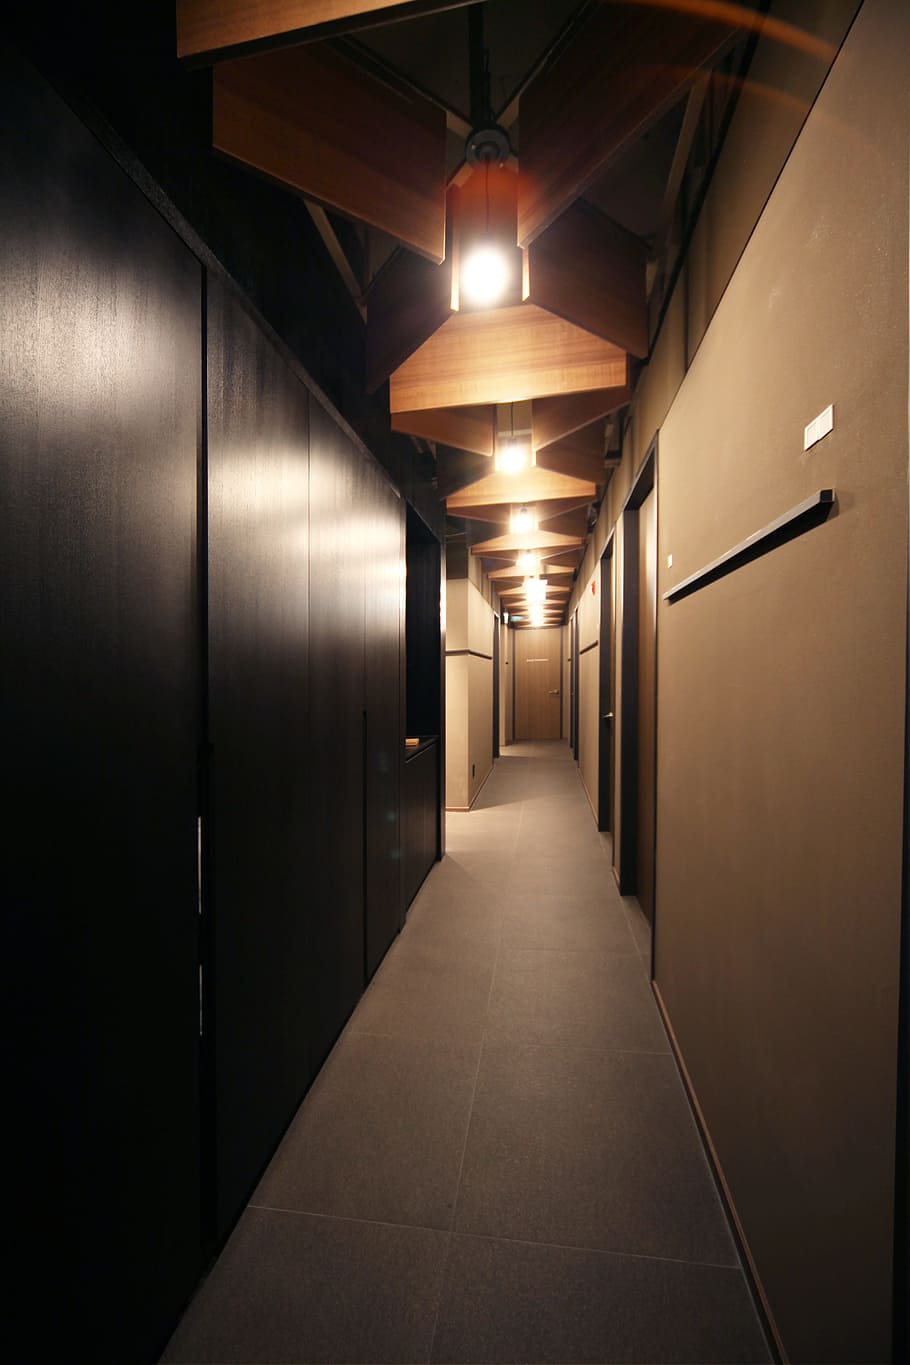 corredor, em exclusivo, exclusivo, interior do hospital, iluminado, equipamento de iluminação, dentro de casa, adega, sala de armazenamento, galeria